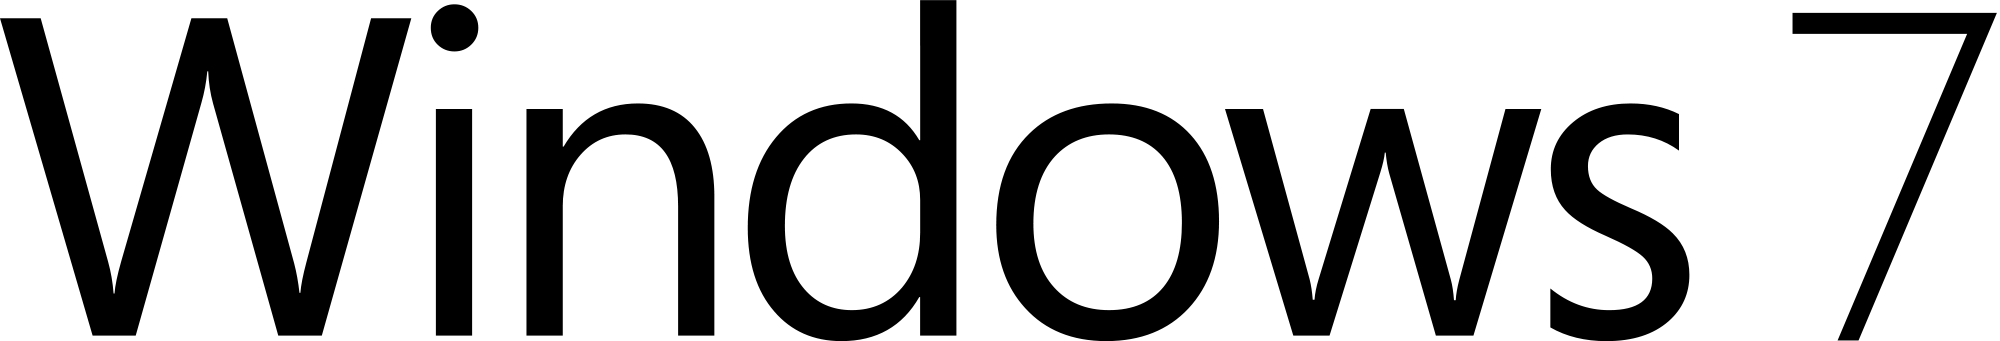 Logotipo do Windows 7